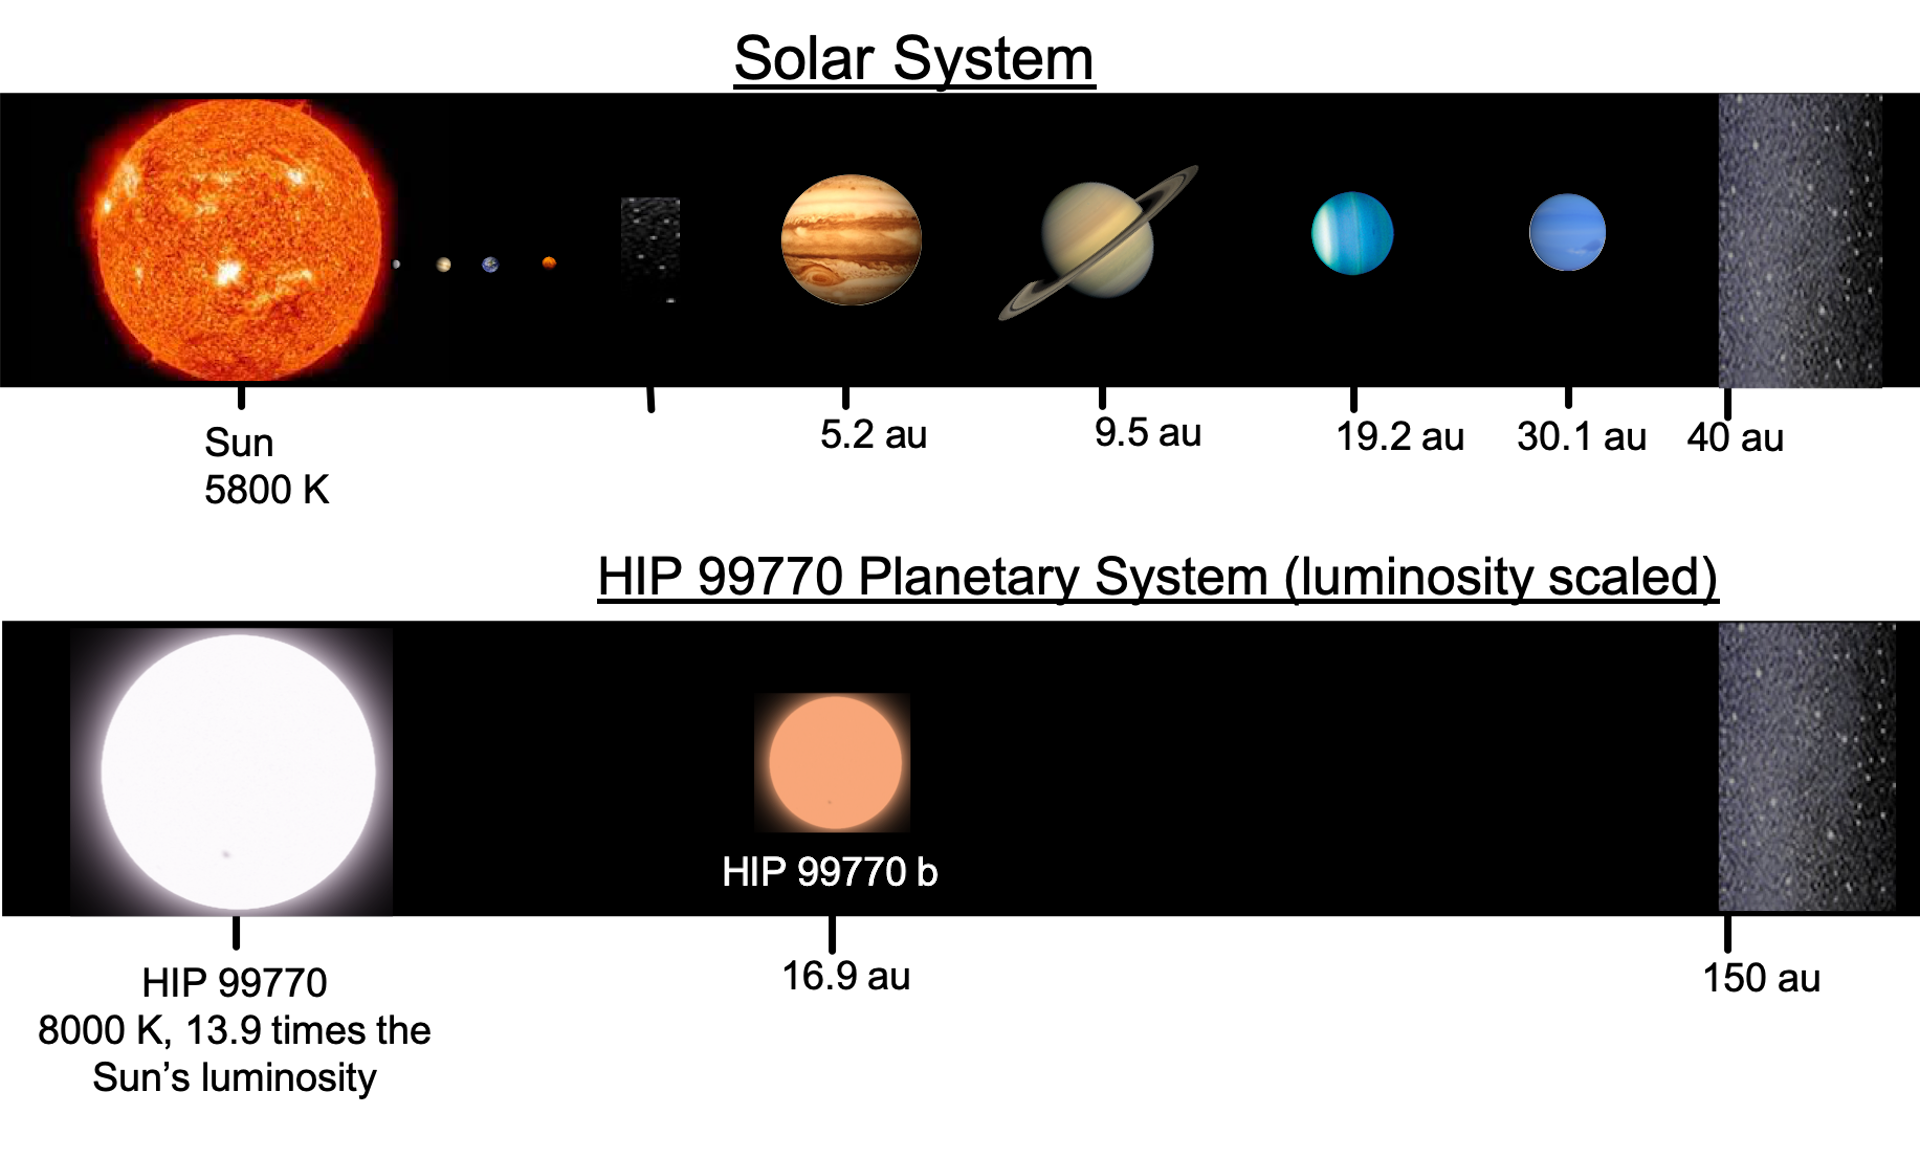 Tähtitieteilijät kuvasivat vain suoraan massiivisen eksoplaneetan. Tästä syystä lisää kuvia saattaa tulla pian